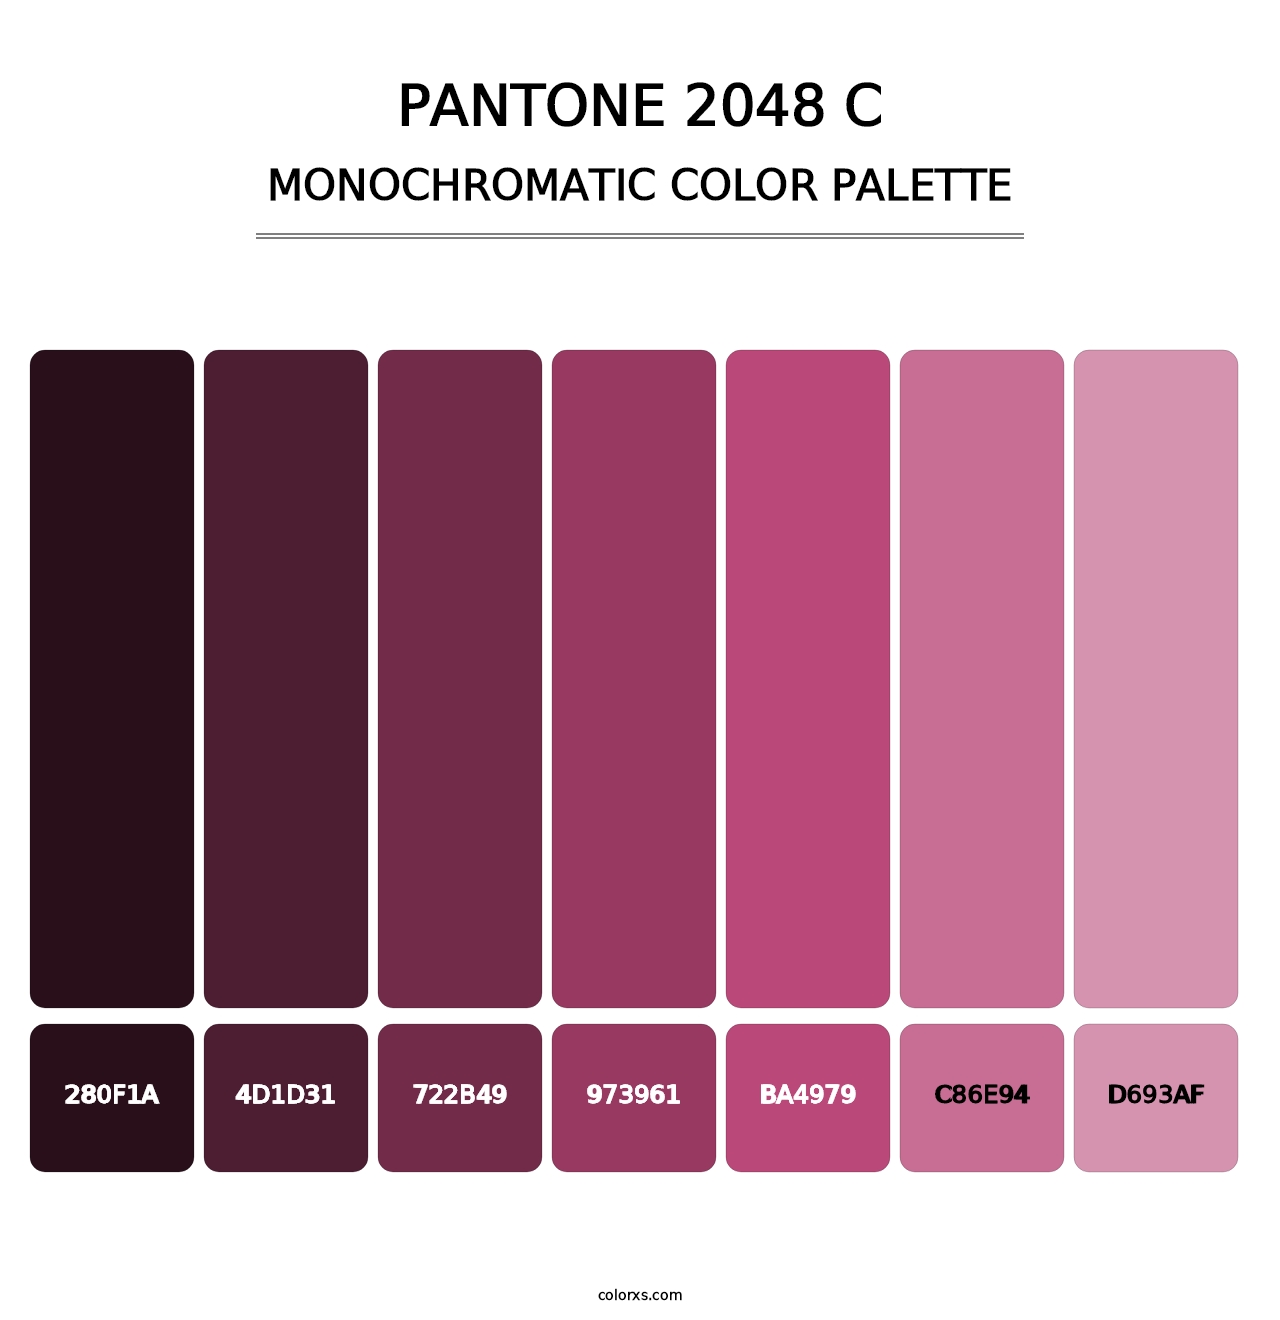 PANTONE 2048 C - Monochromatic Color Palette